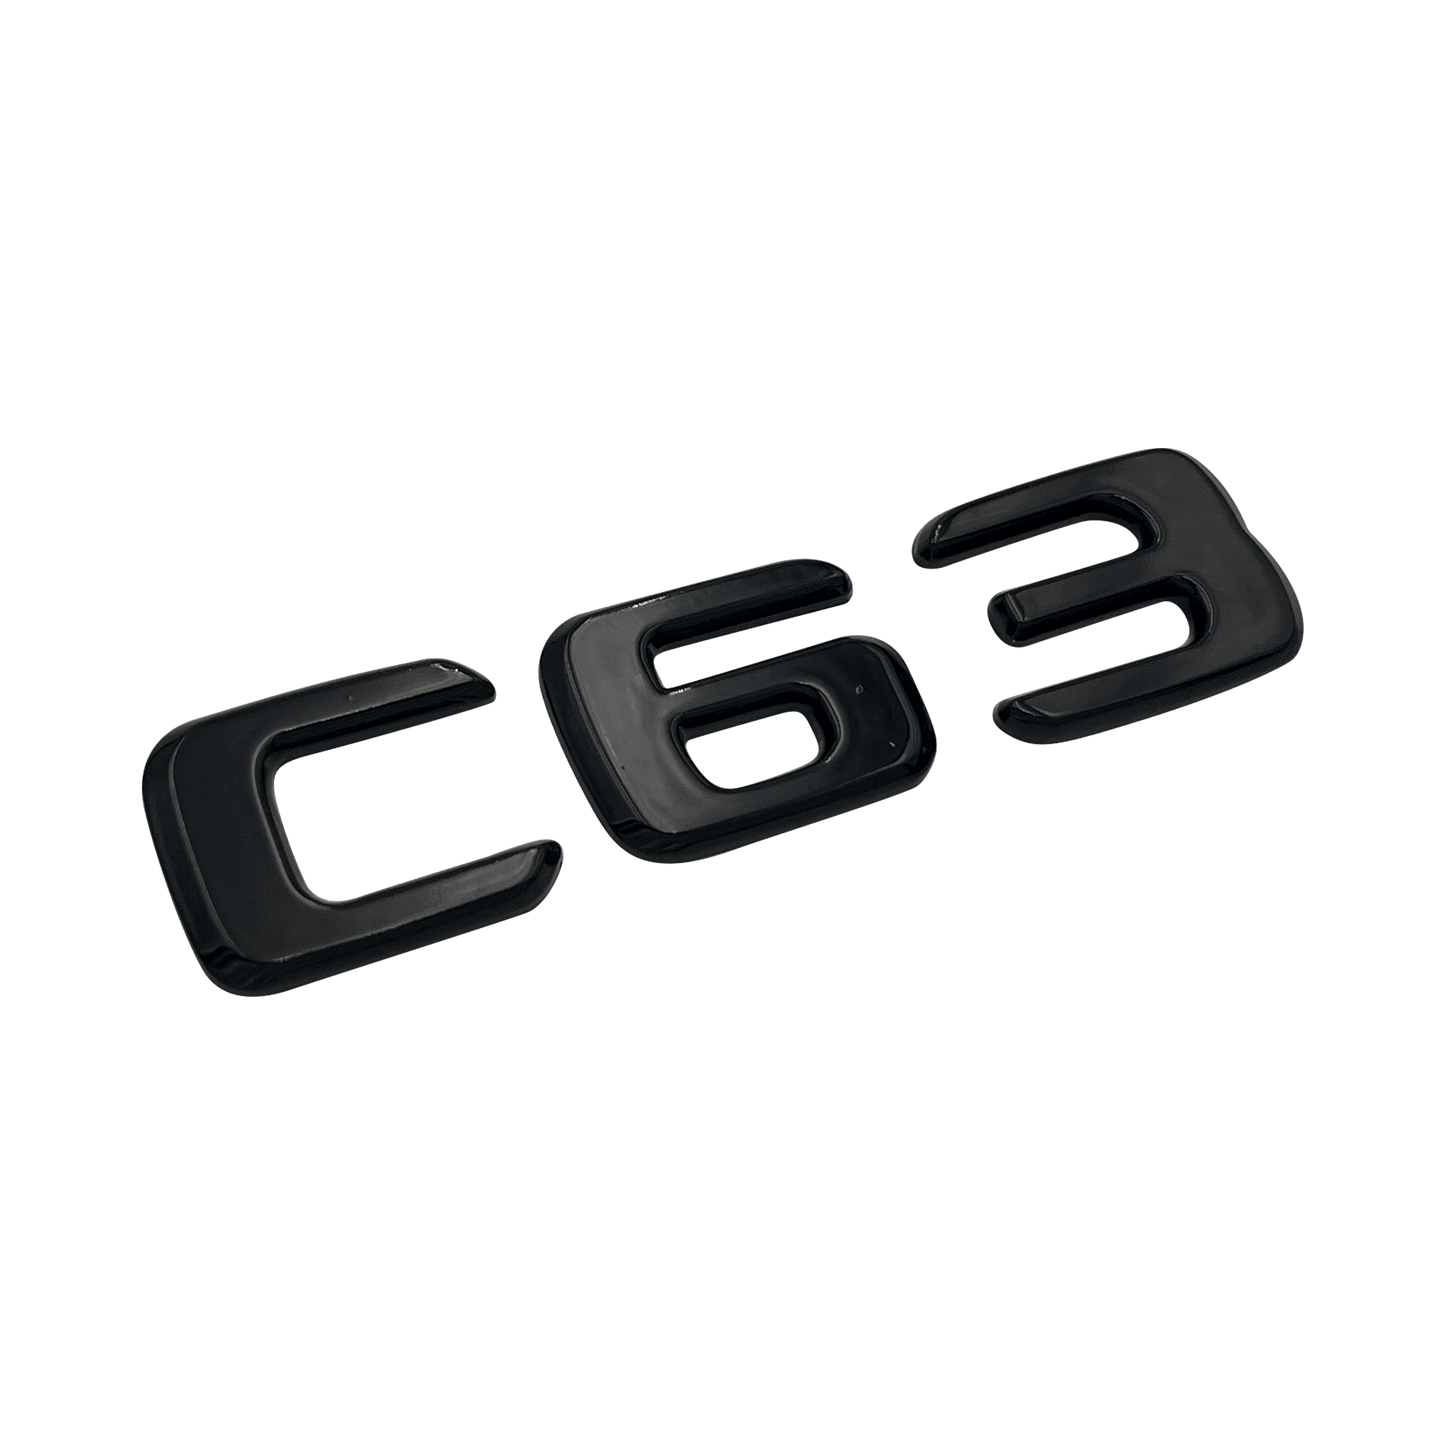 Sort Mercedes C63 Emblem